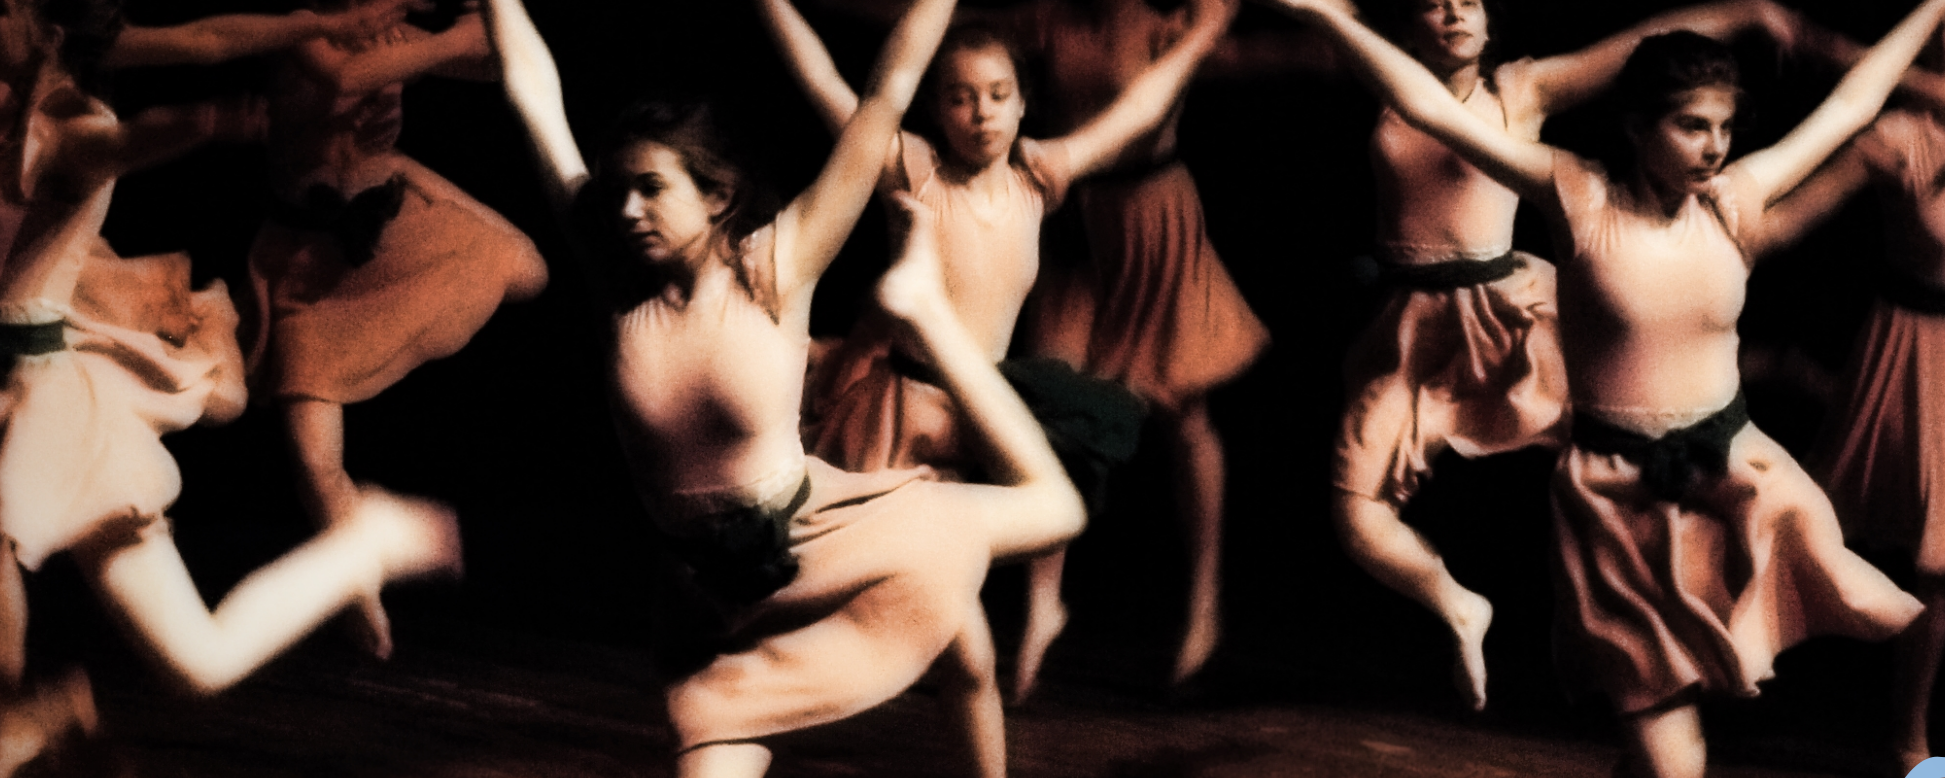 XVIII edycja Wojewódzkiego Festiwalu Współczesnych Form Tanecznych